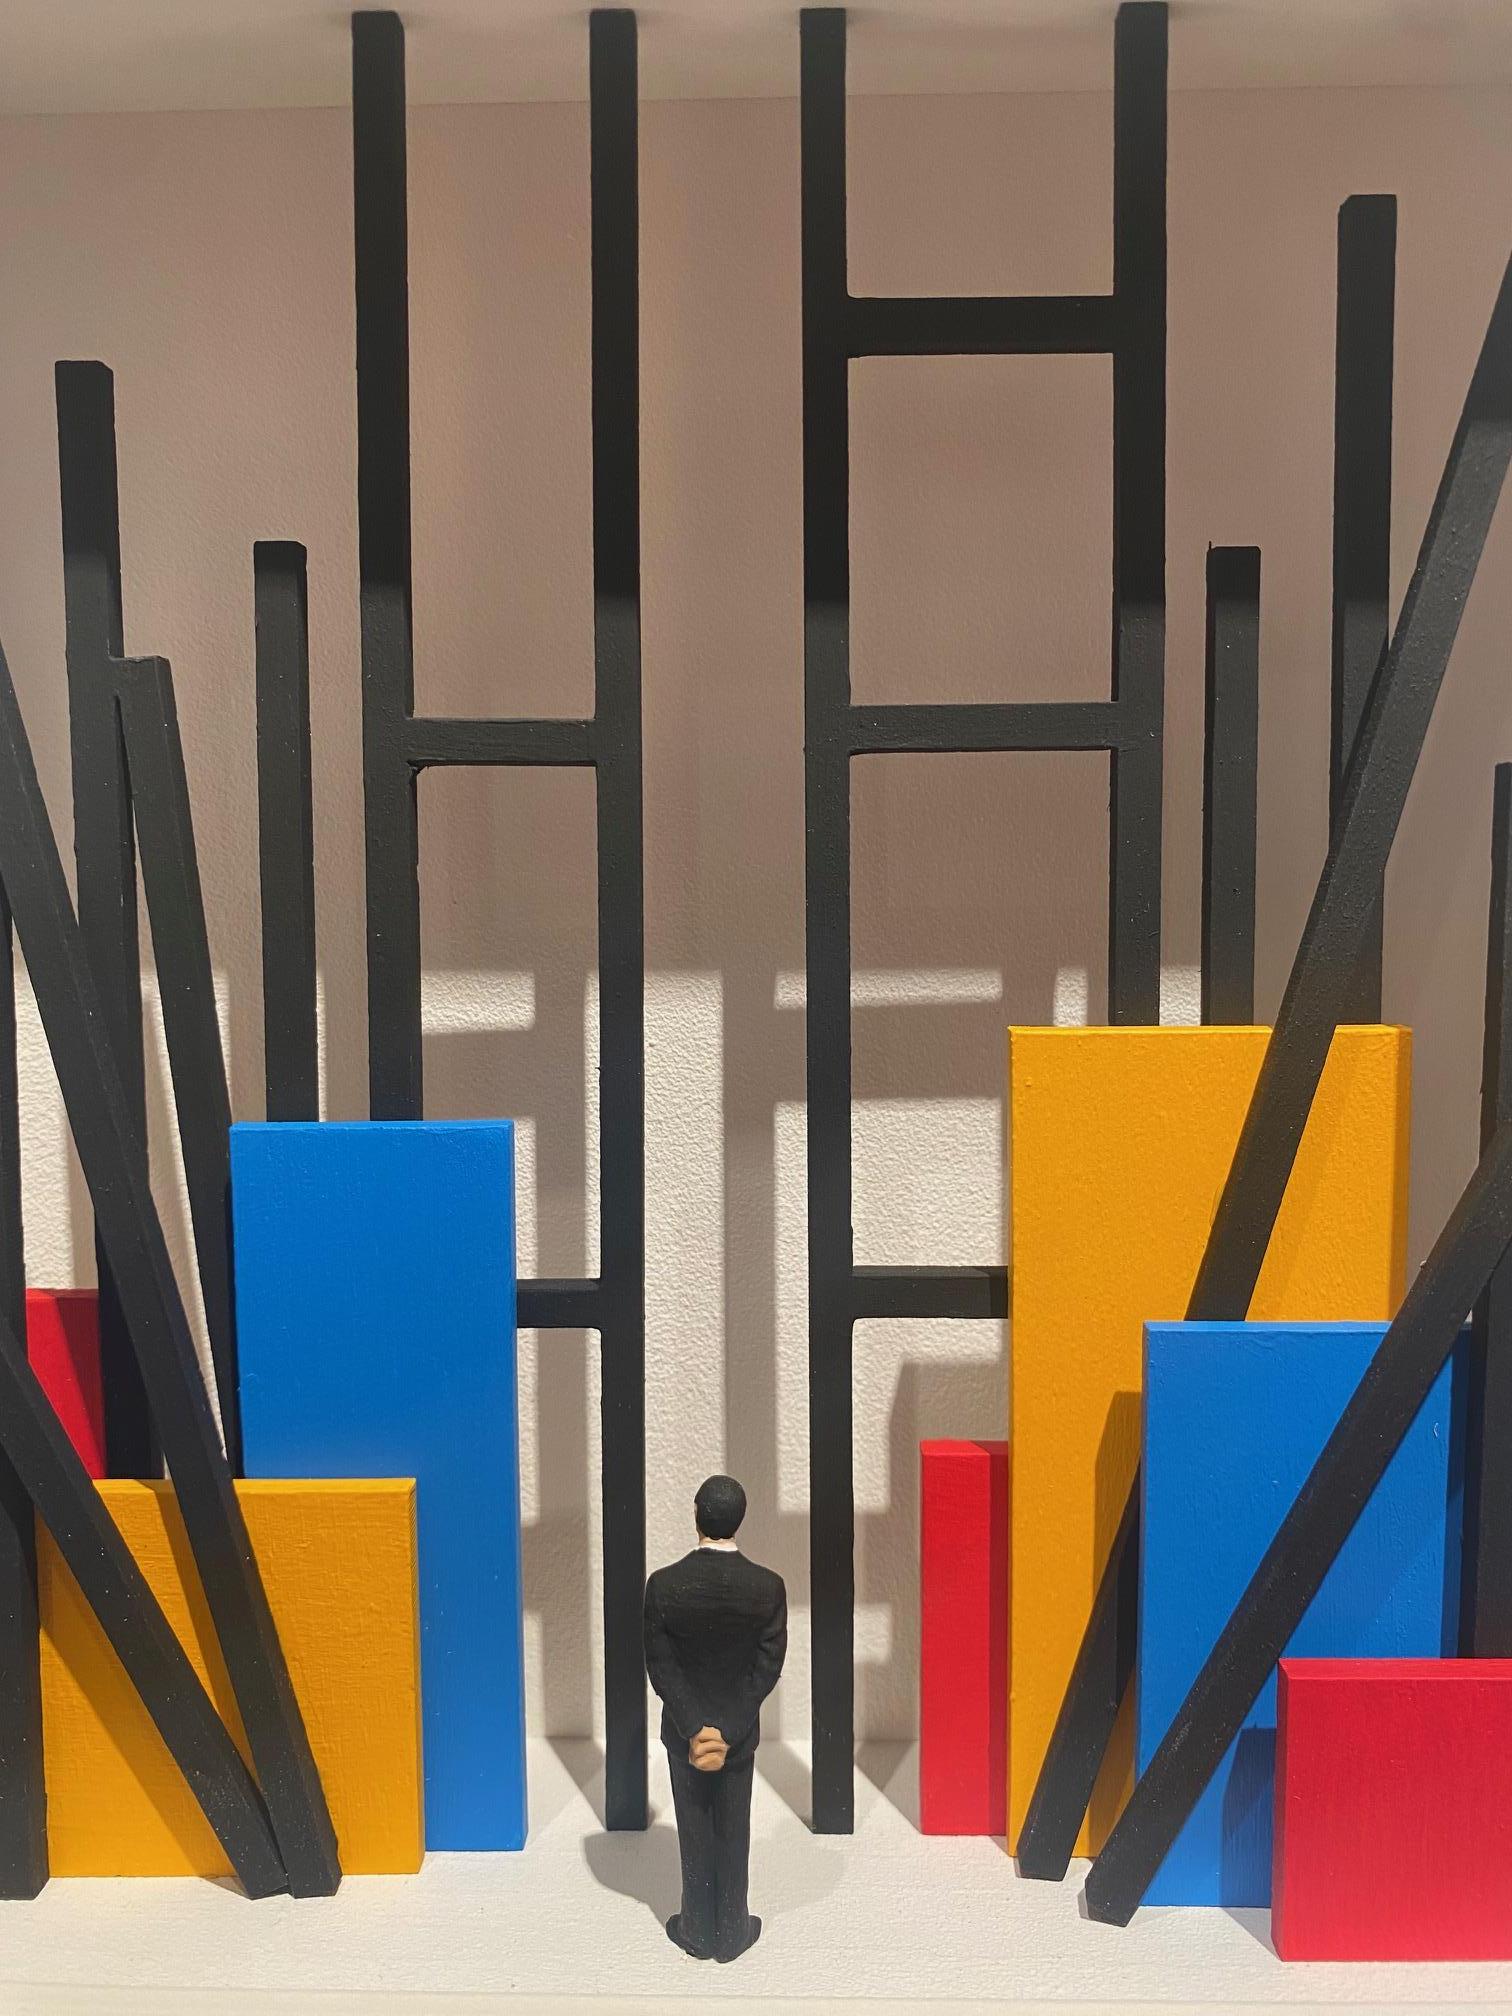 Hommage an Mondrian - The Construction - zeitgenössische Kunst zu Ehren des niederländischen Meisters (Assemblage), Mixed Media Art, von Volker Kuhn